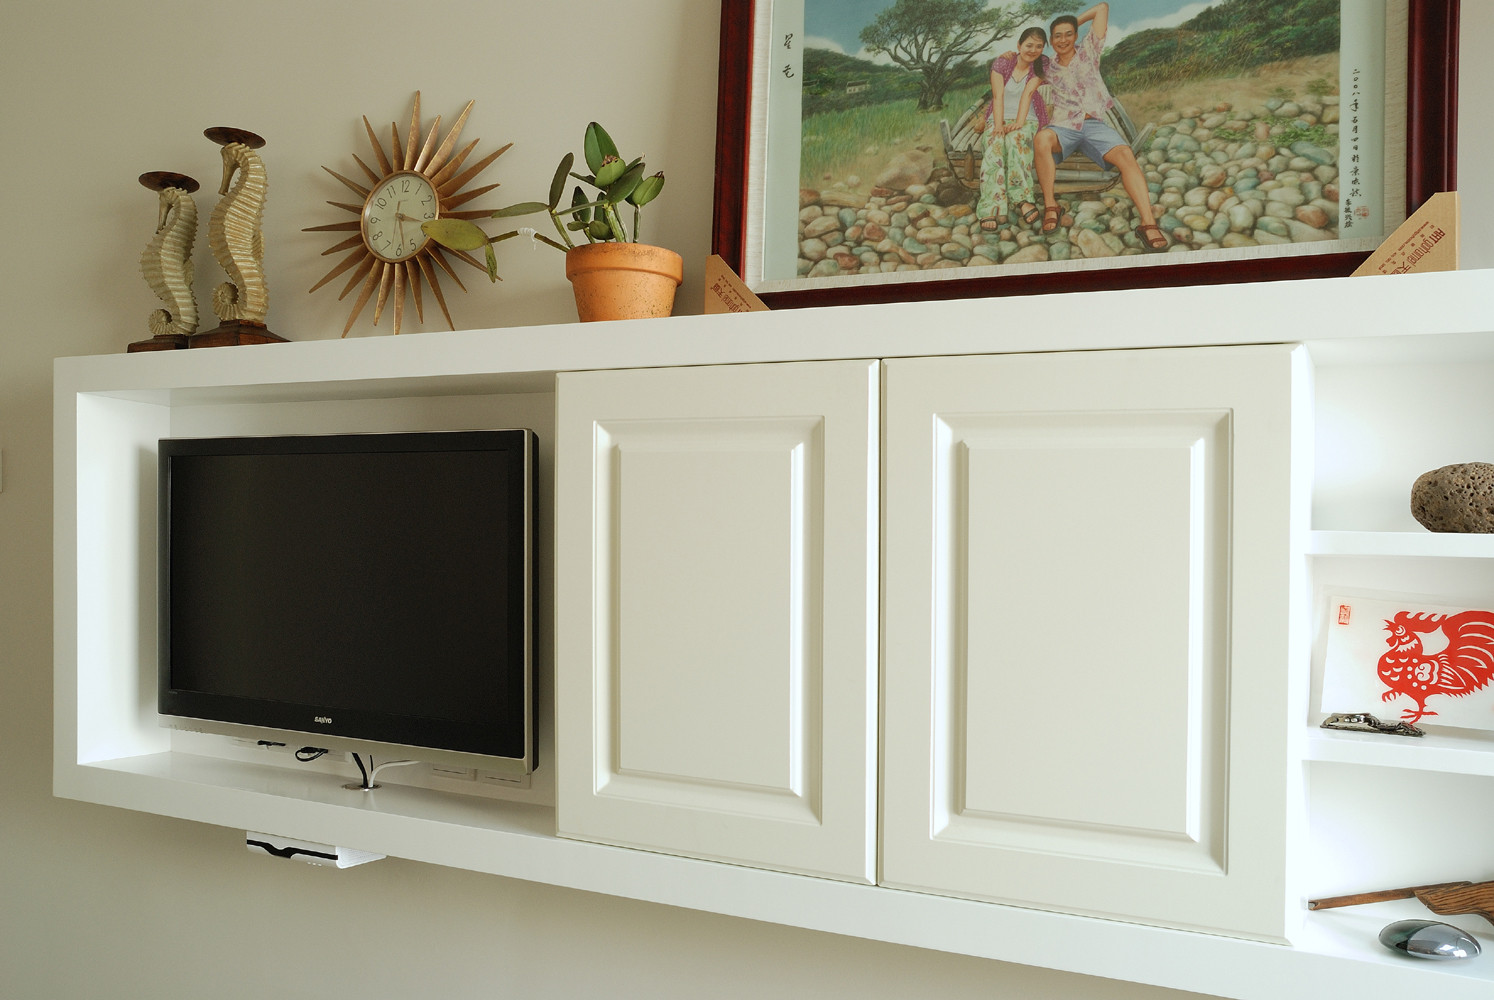 89平美式休闲两居装修电视柜图片